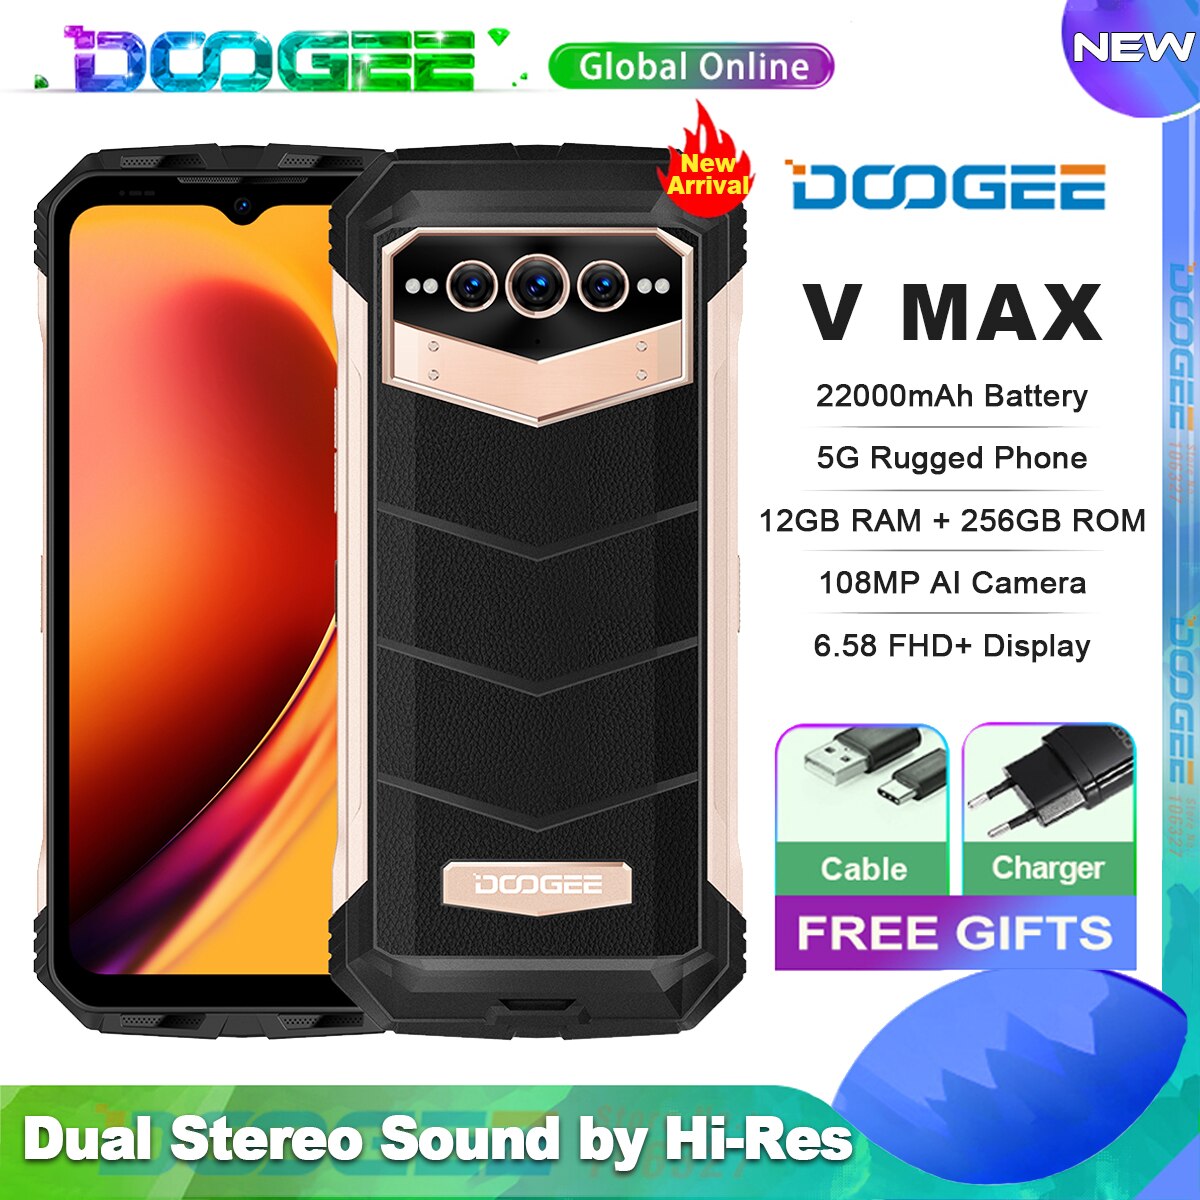 DOOGEE-teléfono inteligente 5G V Max, Smartphone resistente, 22000mAh,12GB + 256GB, cámara de 108MP, 120Hz, dimensión 1080, alta resolución, NFC